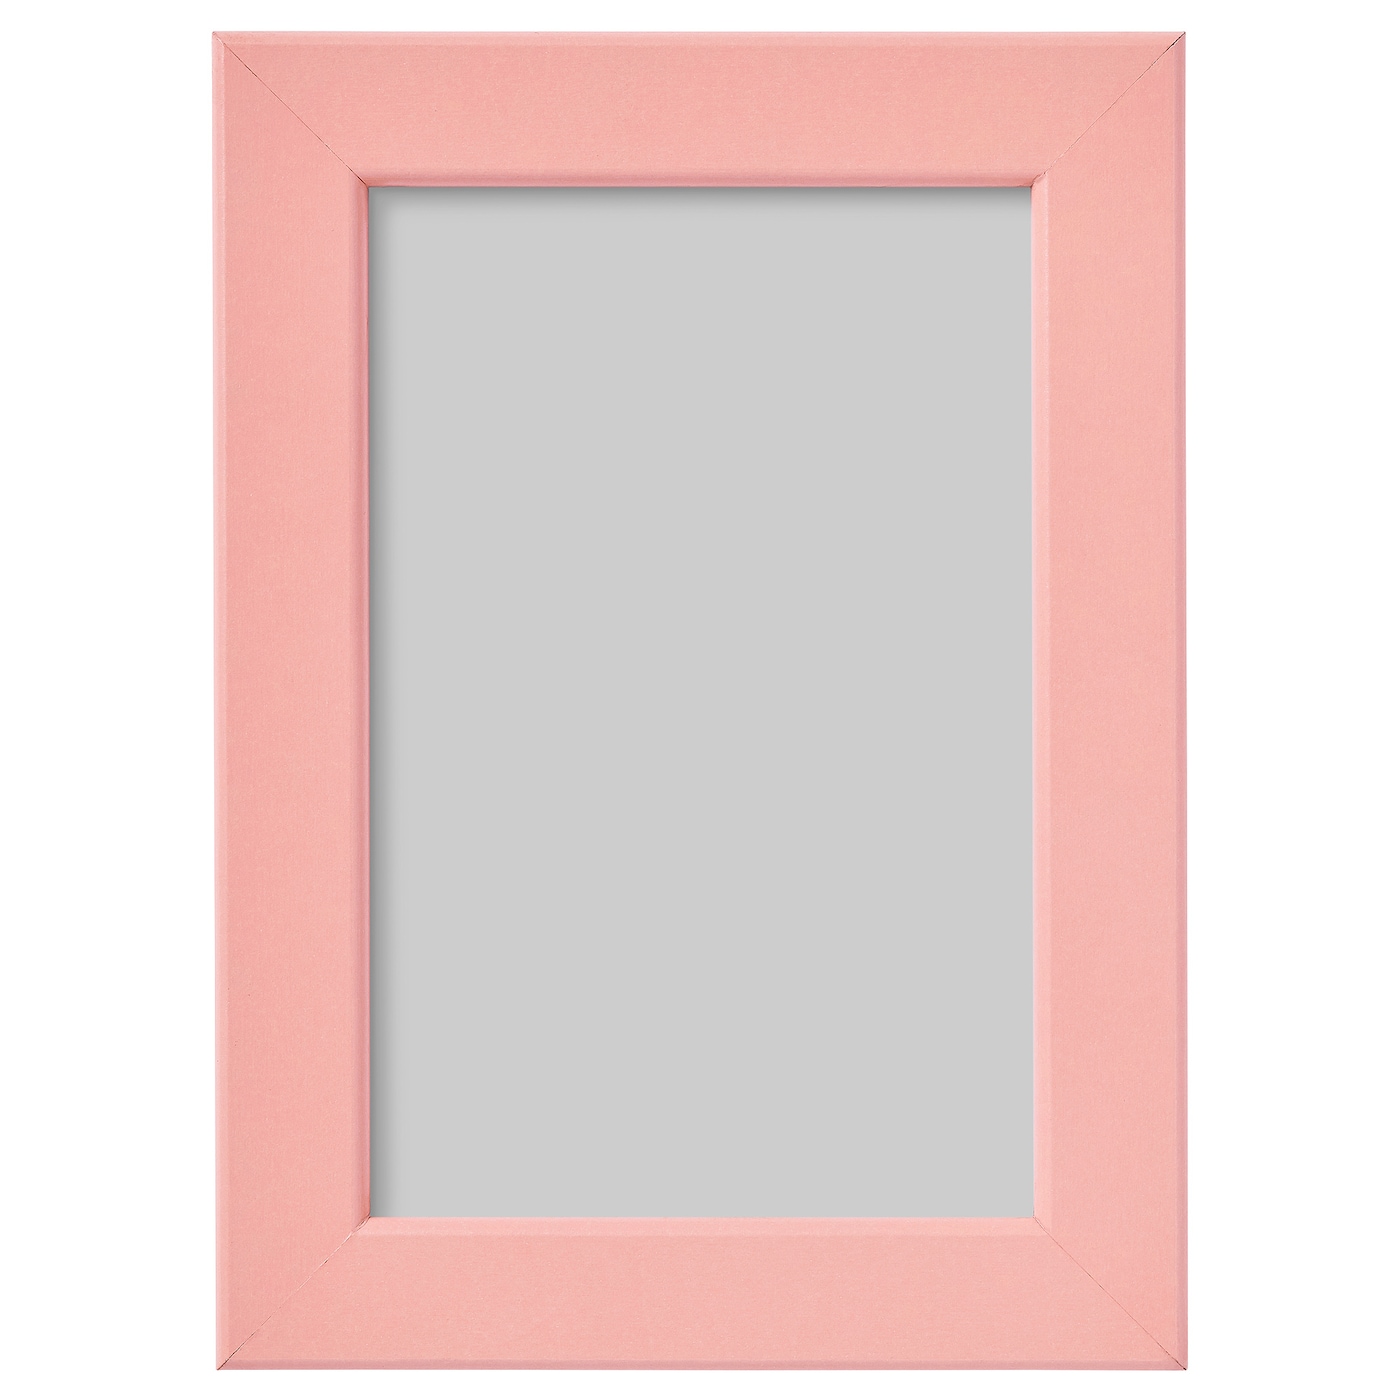 Рамка - IKEA FISKBO, 10х15 см, розовый, ФИСКБО ИКЕА